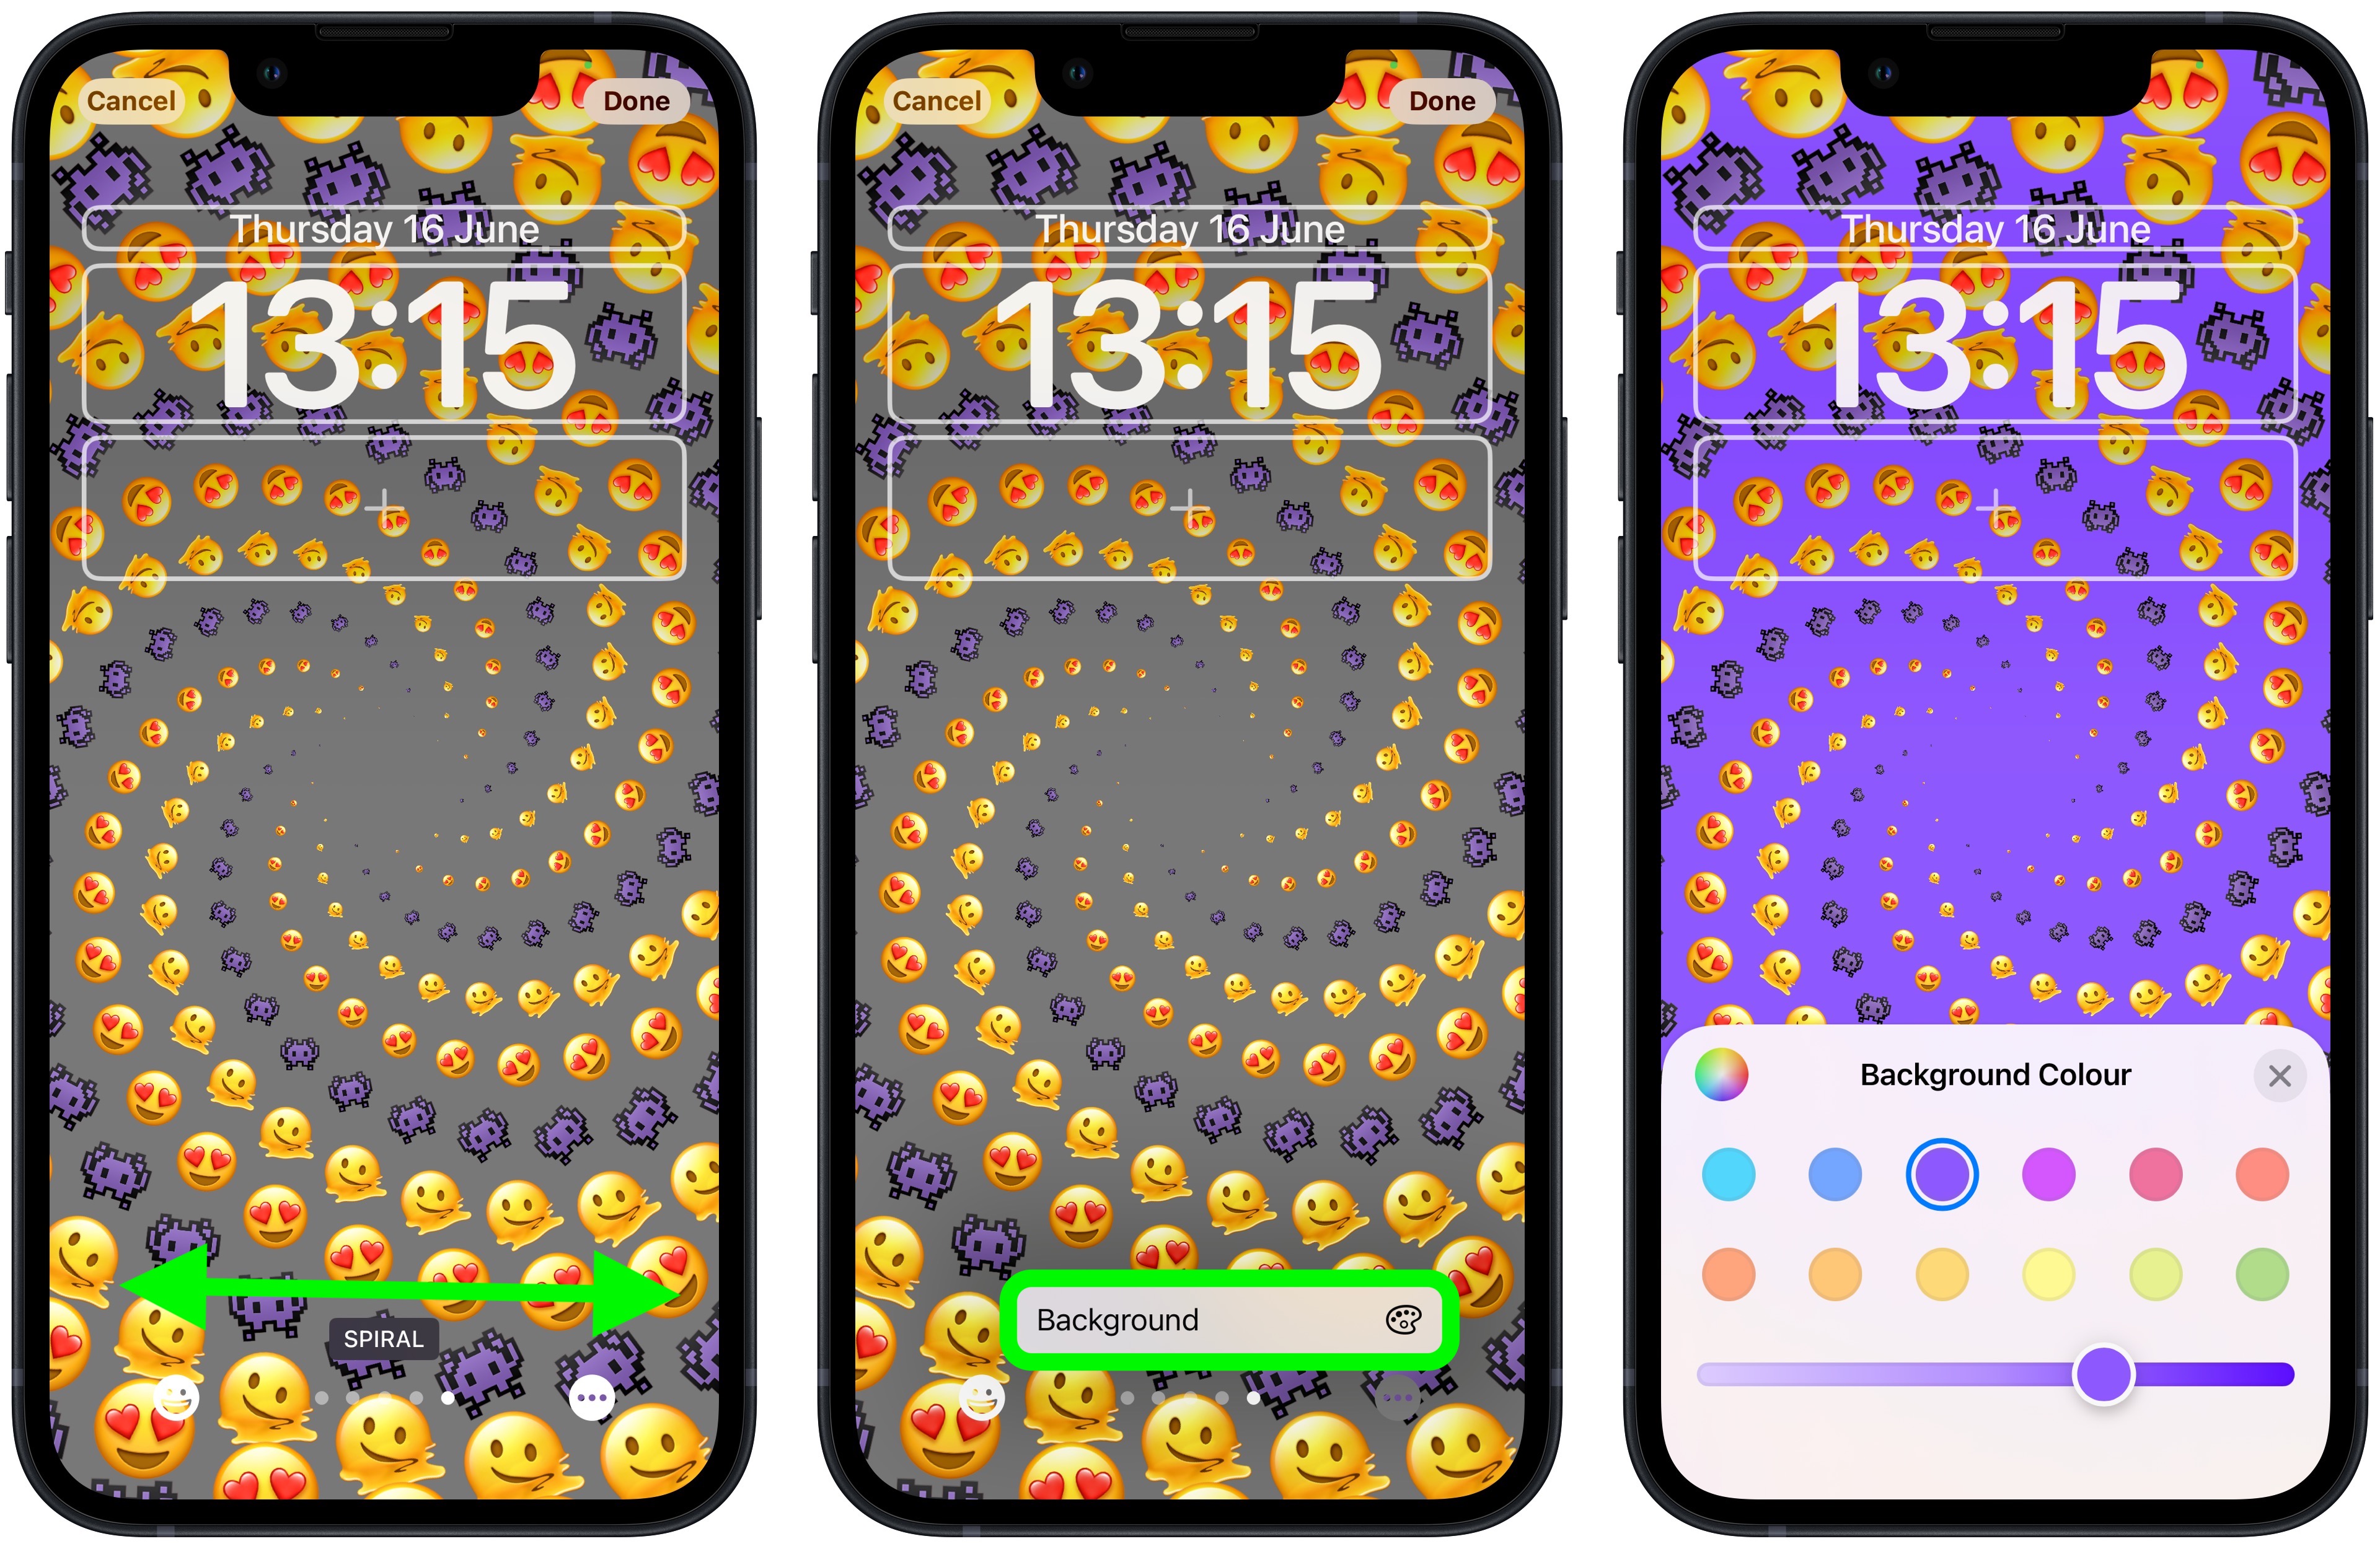 Emoji Lock Screen Wallpaper là một sự kết hợp độc đáo giữa hình ảnh, emoji và màn hình khóa. Với những mẫu hình nền mang tính sáng tạo và vui nhộn, bạn sẽ không chỉ có một màn hình khóa độc đáo mà còn là một điểm nhấn tuyệt vời trên chiếc điện thoại của mình.